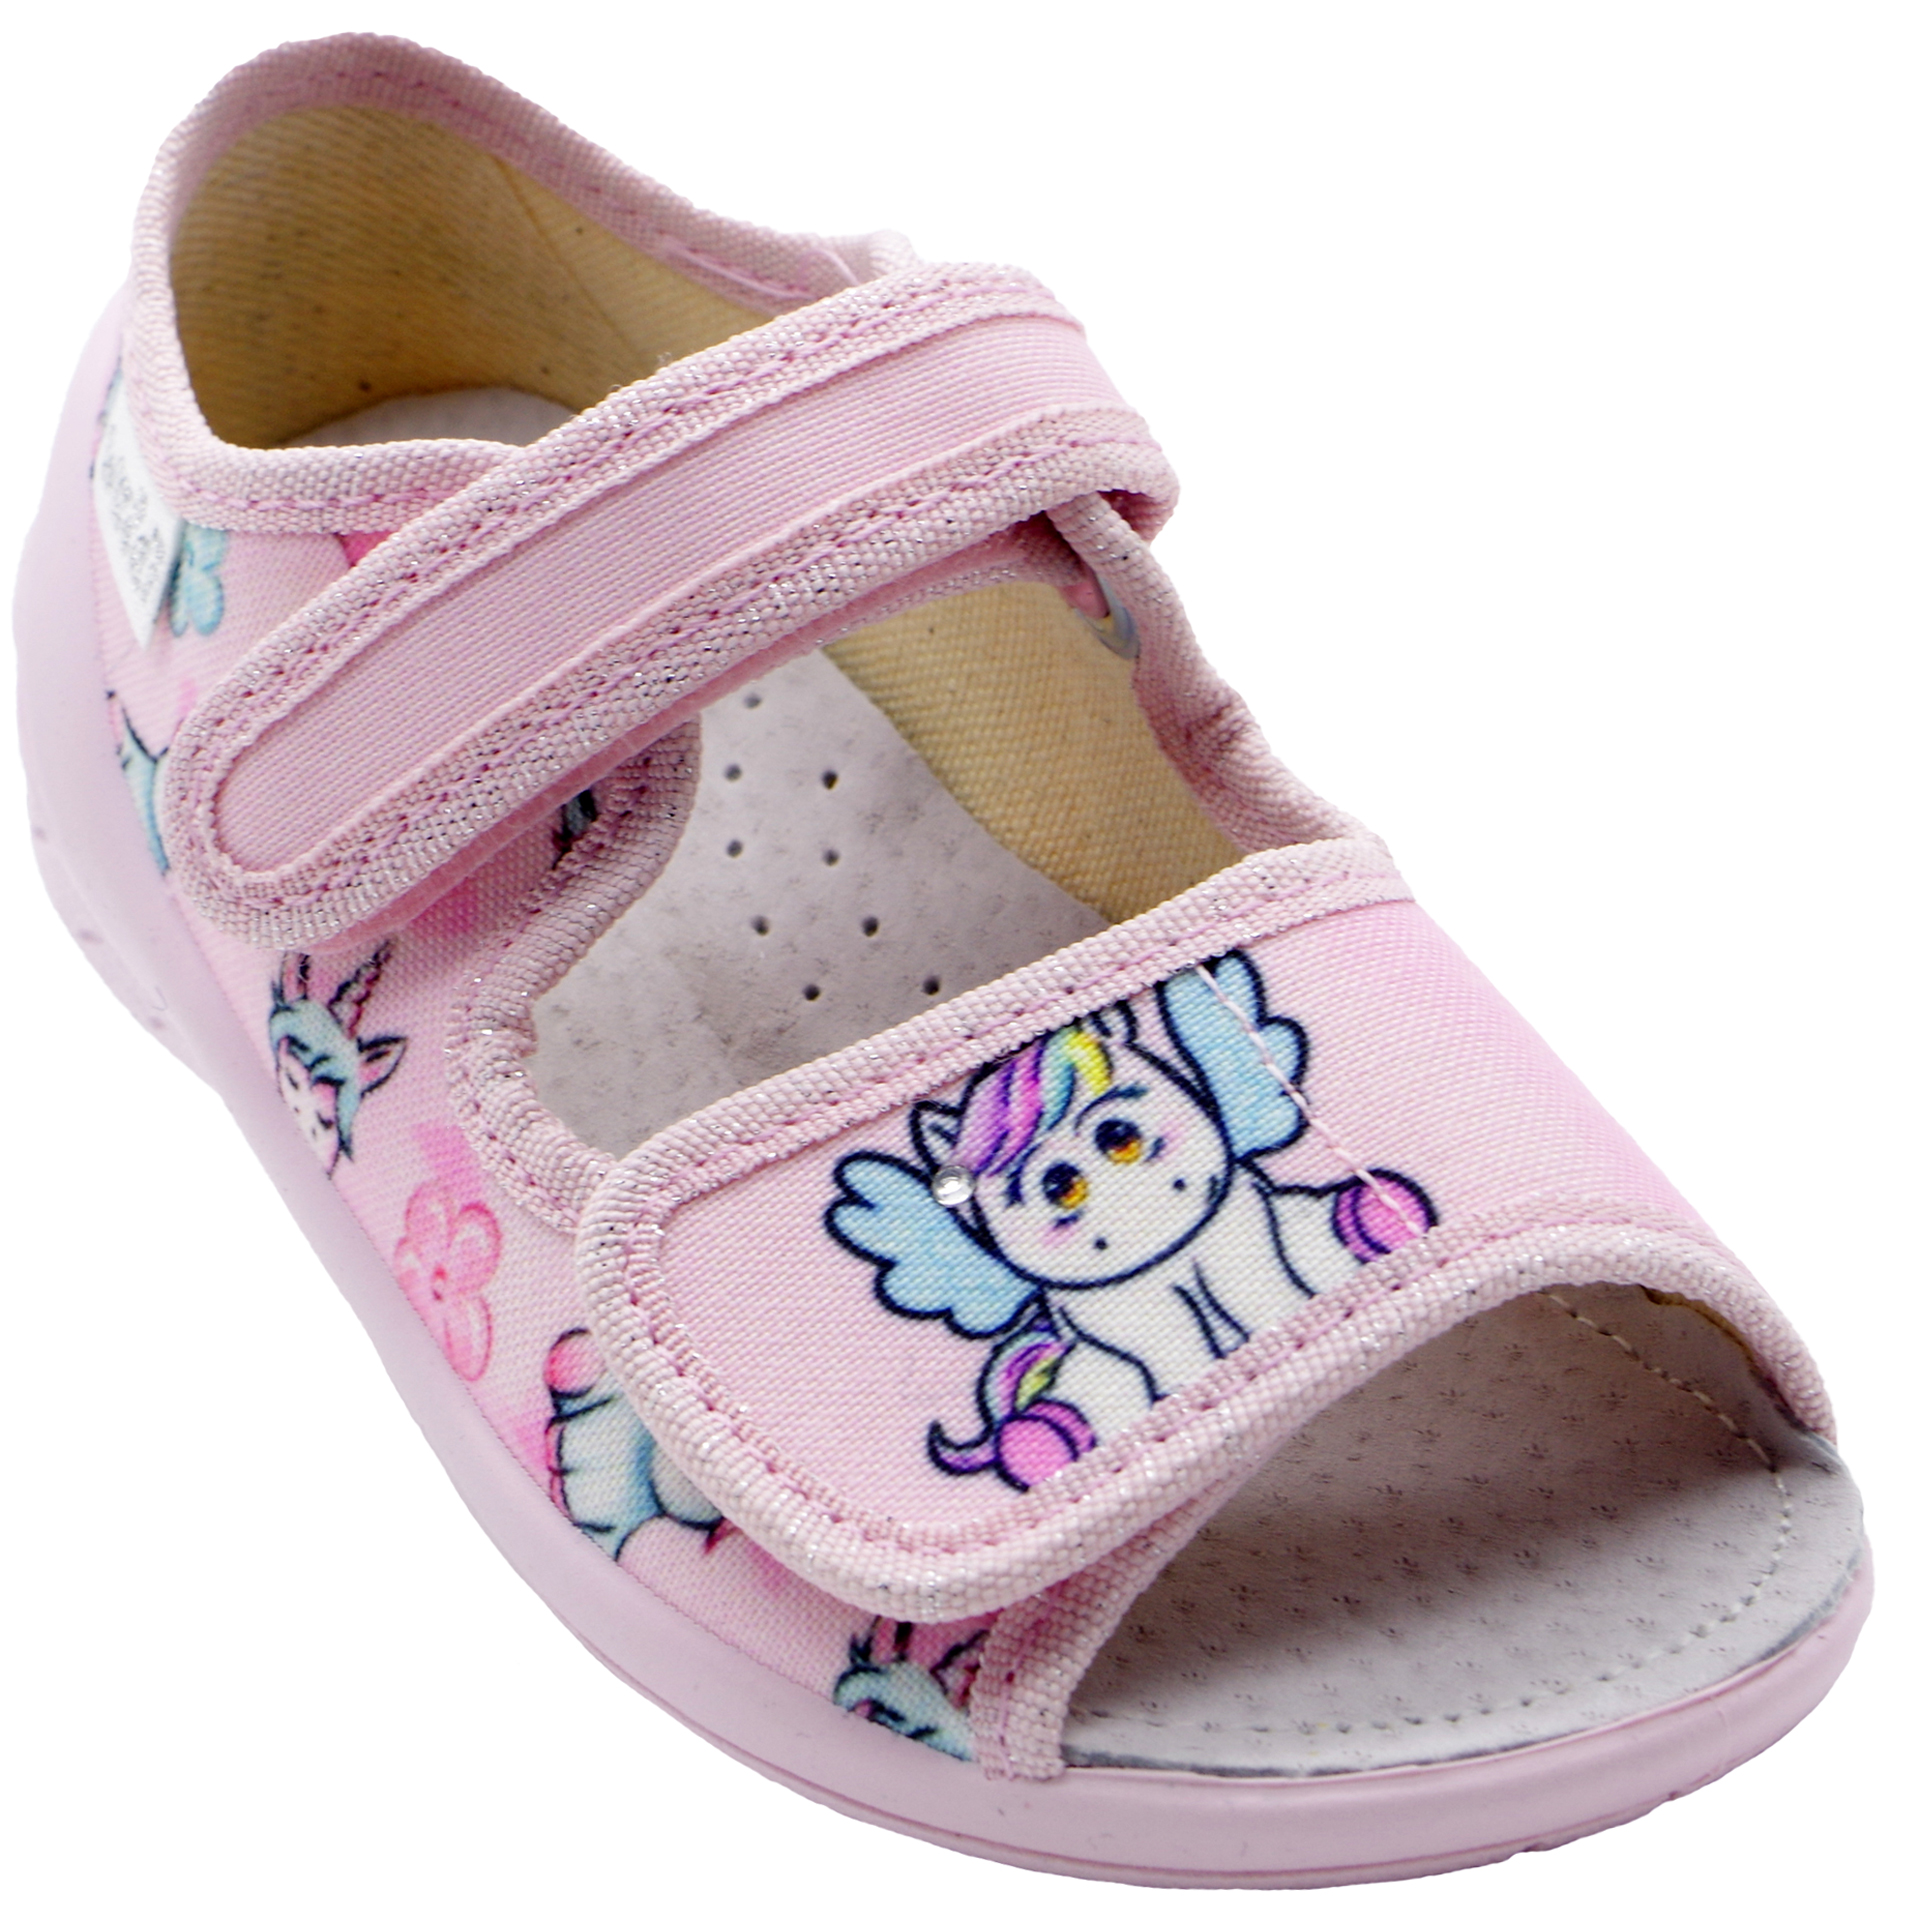 Текстильная обувь для девочек Тапочки Ева Единорог (2180) цвет Микс 23-30 размеры – Sole Kids